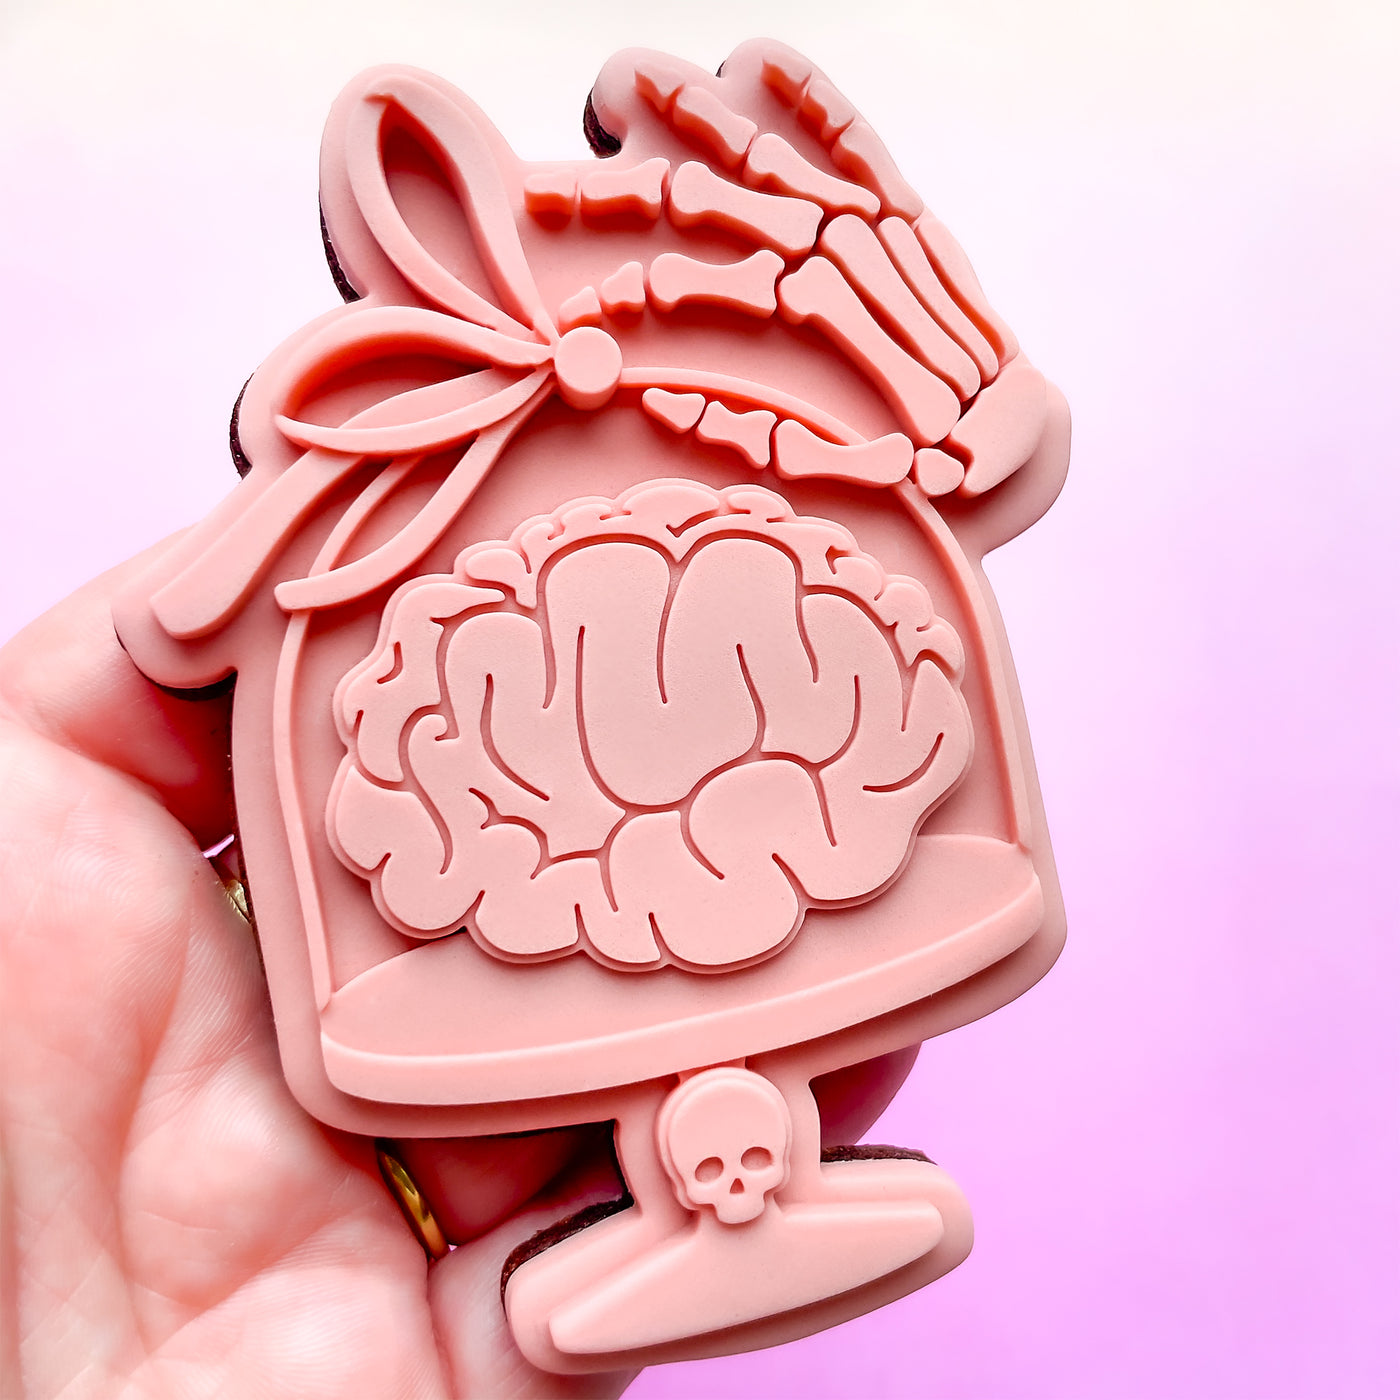 Brain Dessert